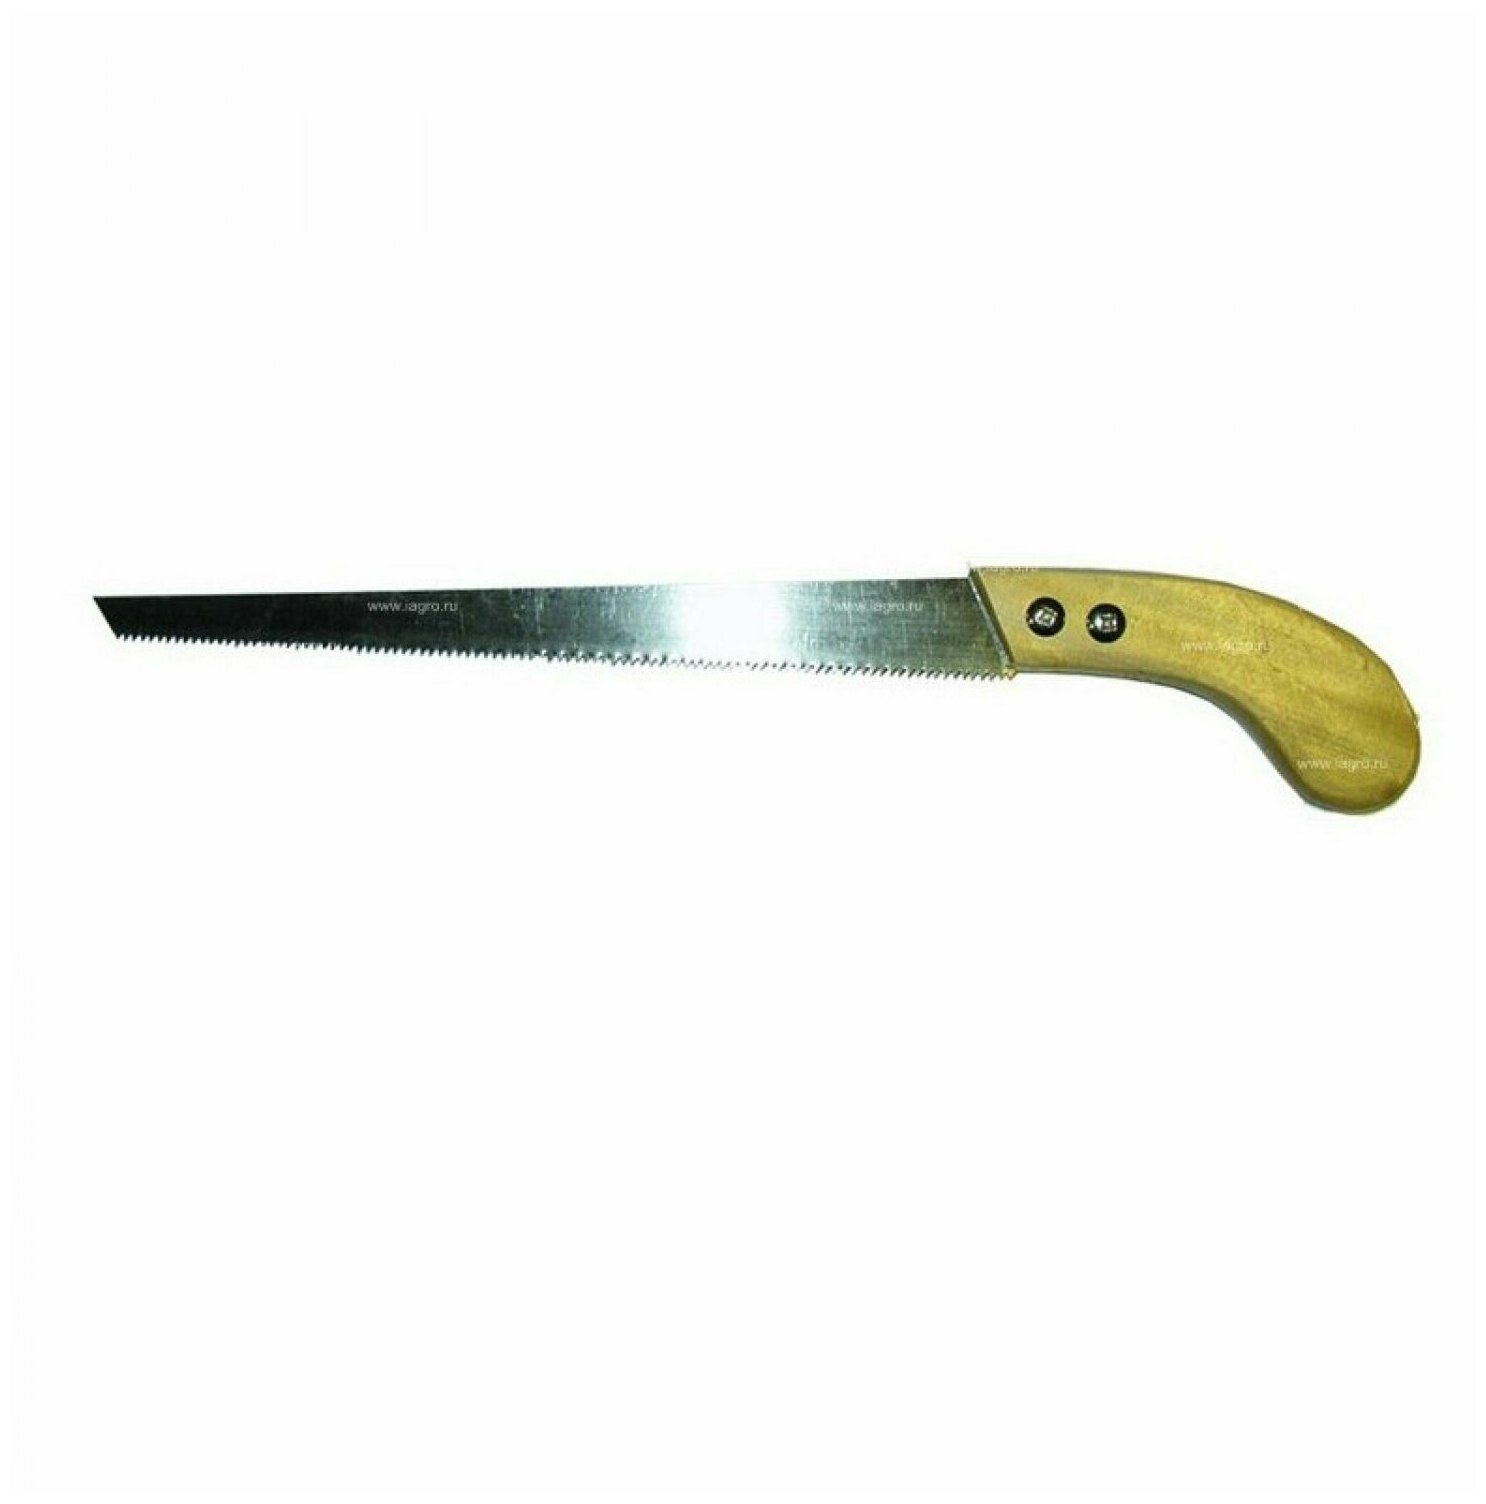 Ножовка садовая прямая 300мм с деревянной ручкой 010208 Инструм- Агро